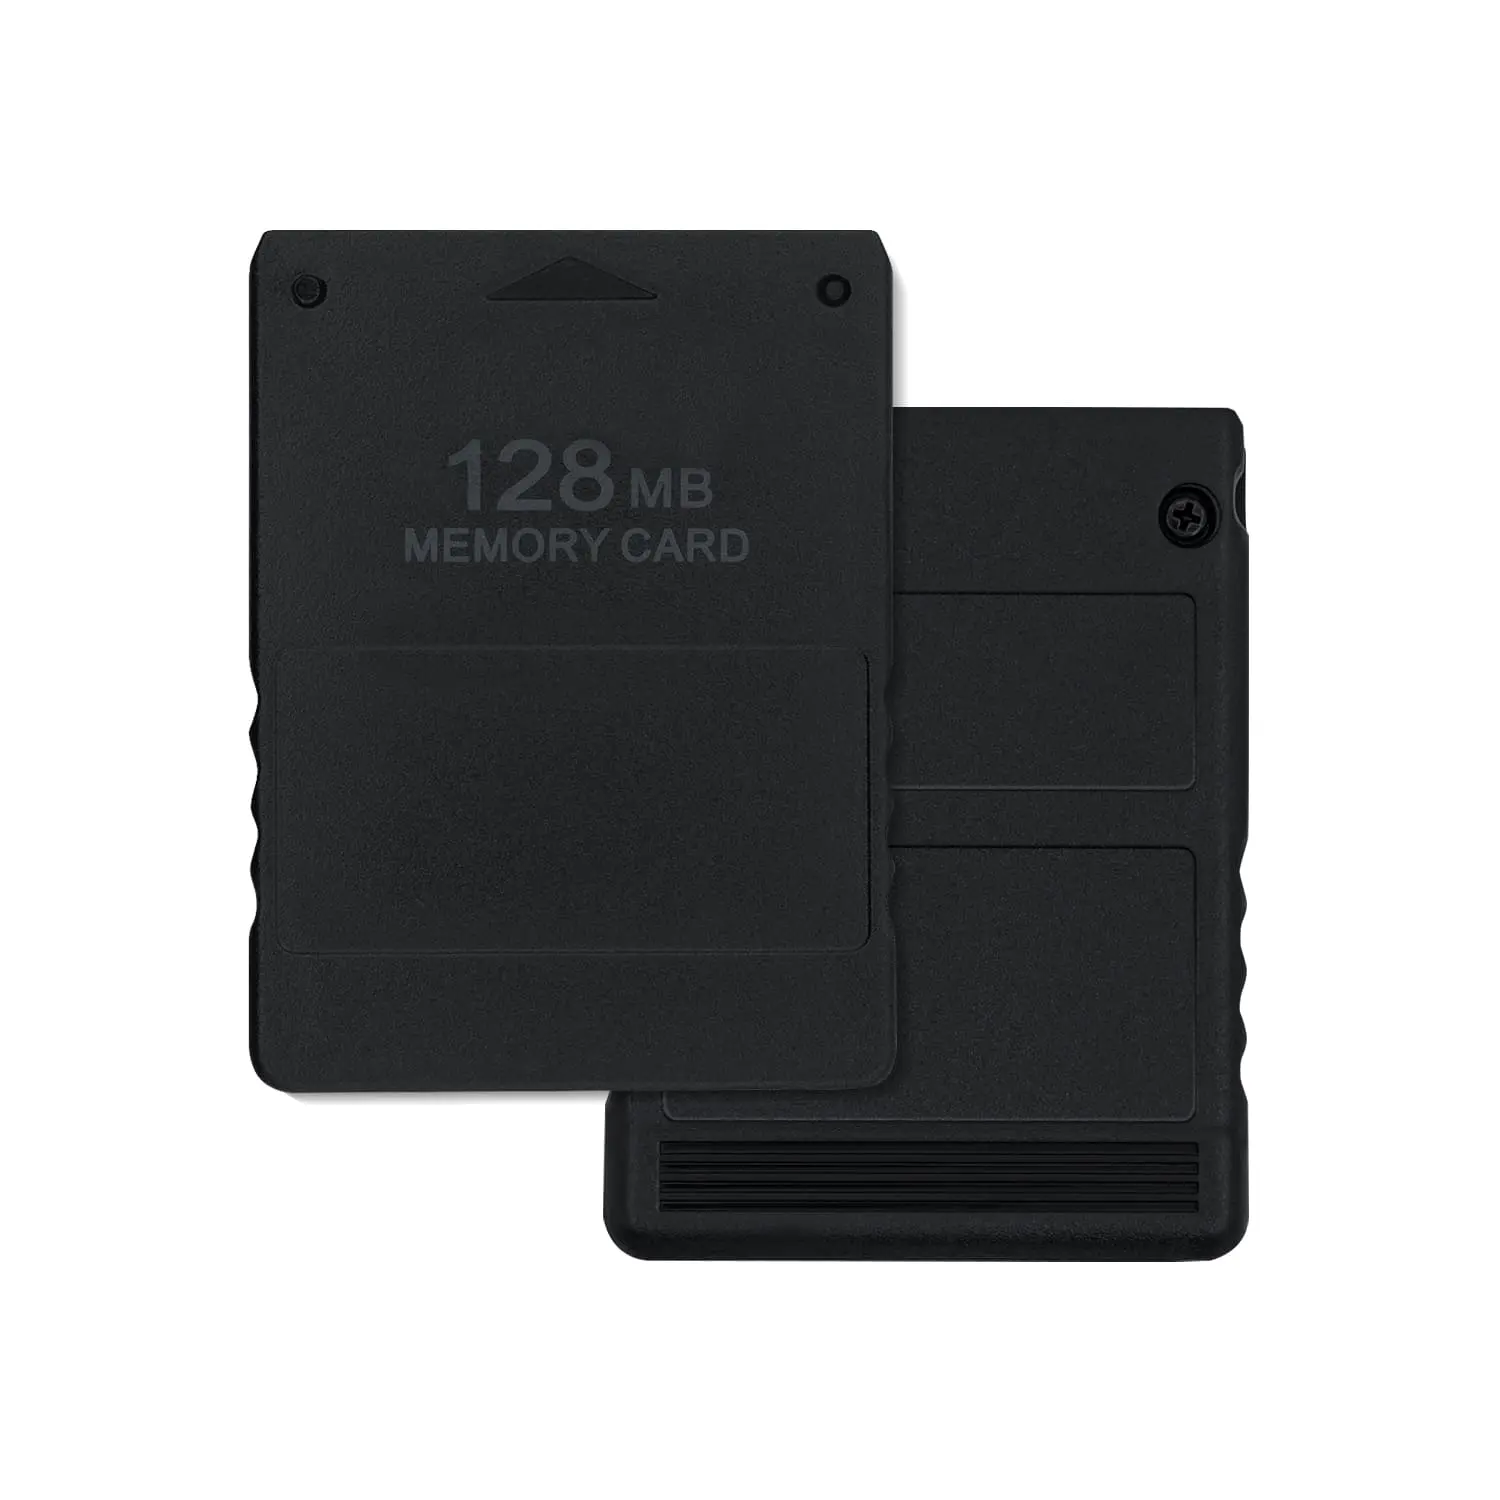 Speicher karte mit 128MB Kapazität Save Game Data Stick für Playstation 2 PS2